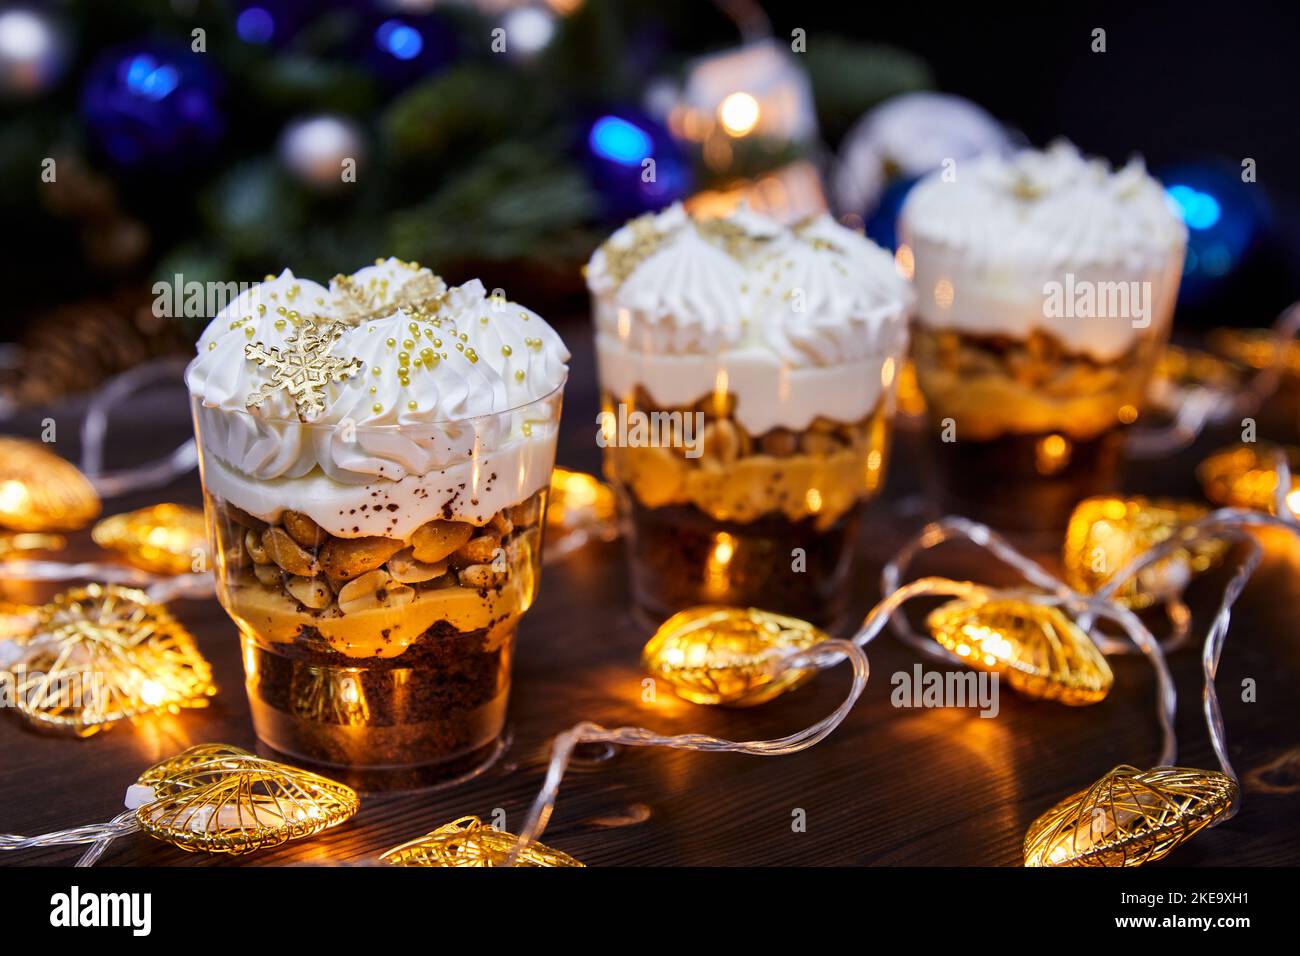 Weihnachts-Kleinigkeiten in Tassen als Dessert, verziert mit Karamell-Schneeflocken, für einen festlichen Tisch auf einem Hintergrund glühender Girlanden Stockfoto